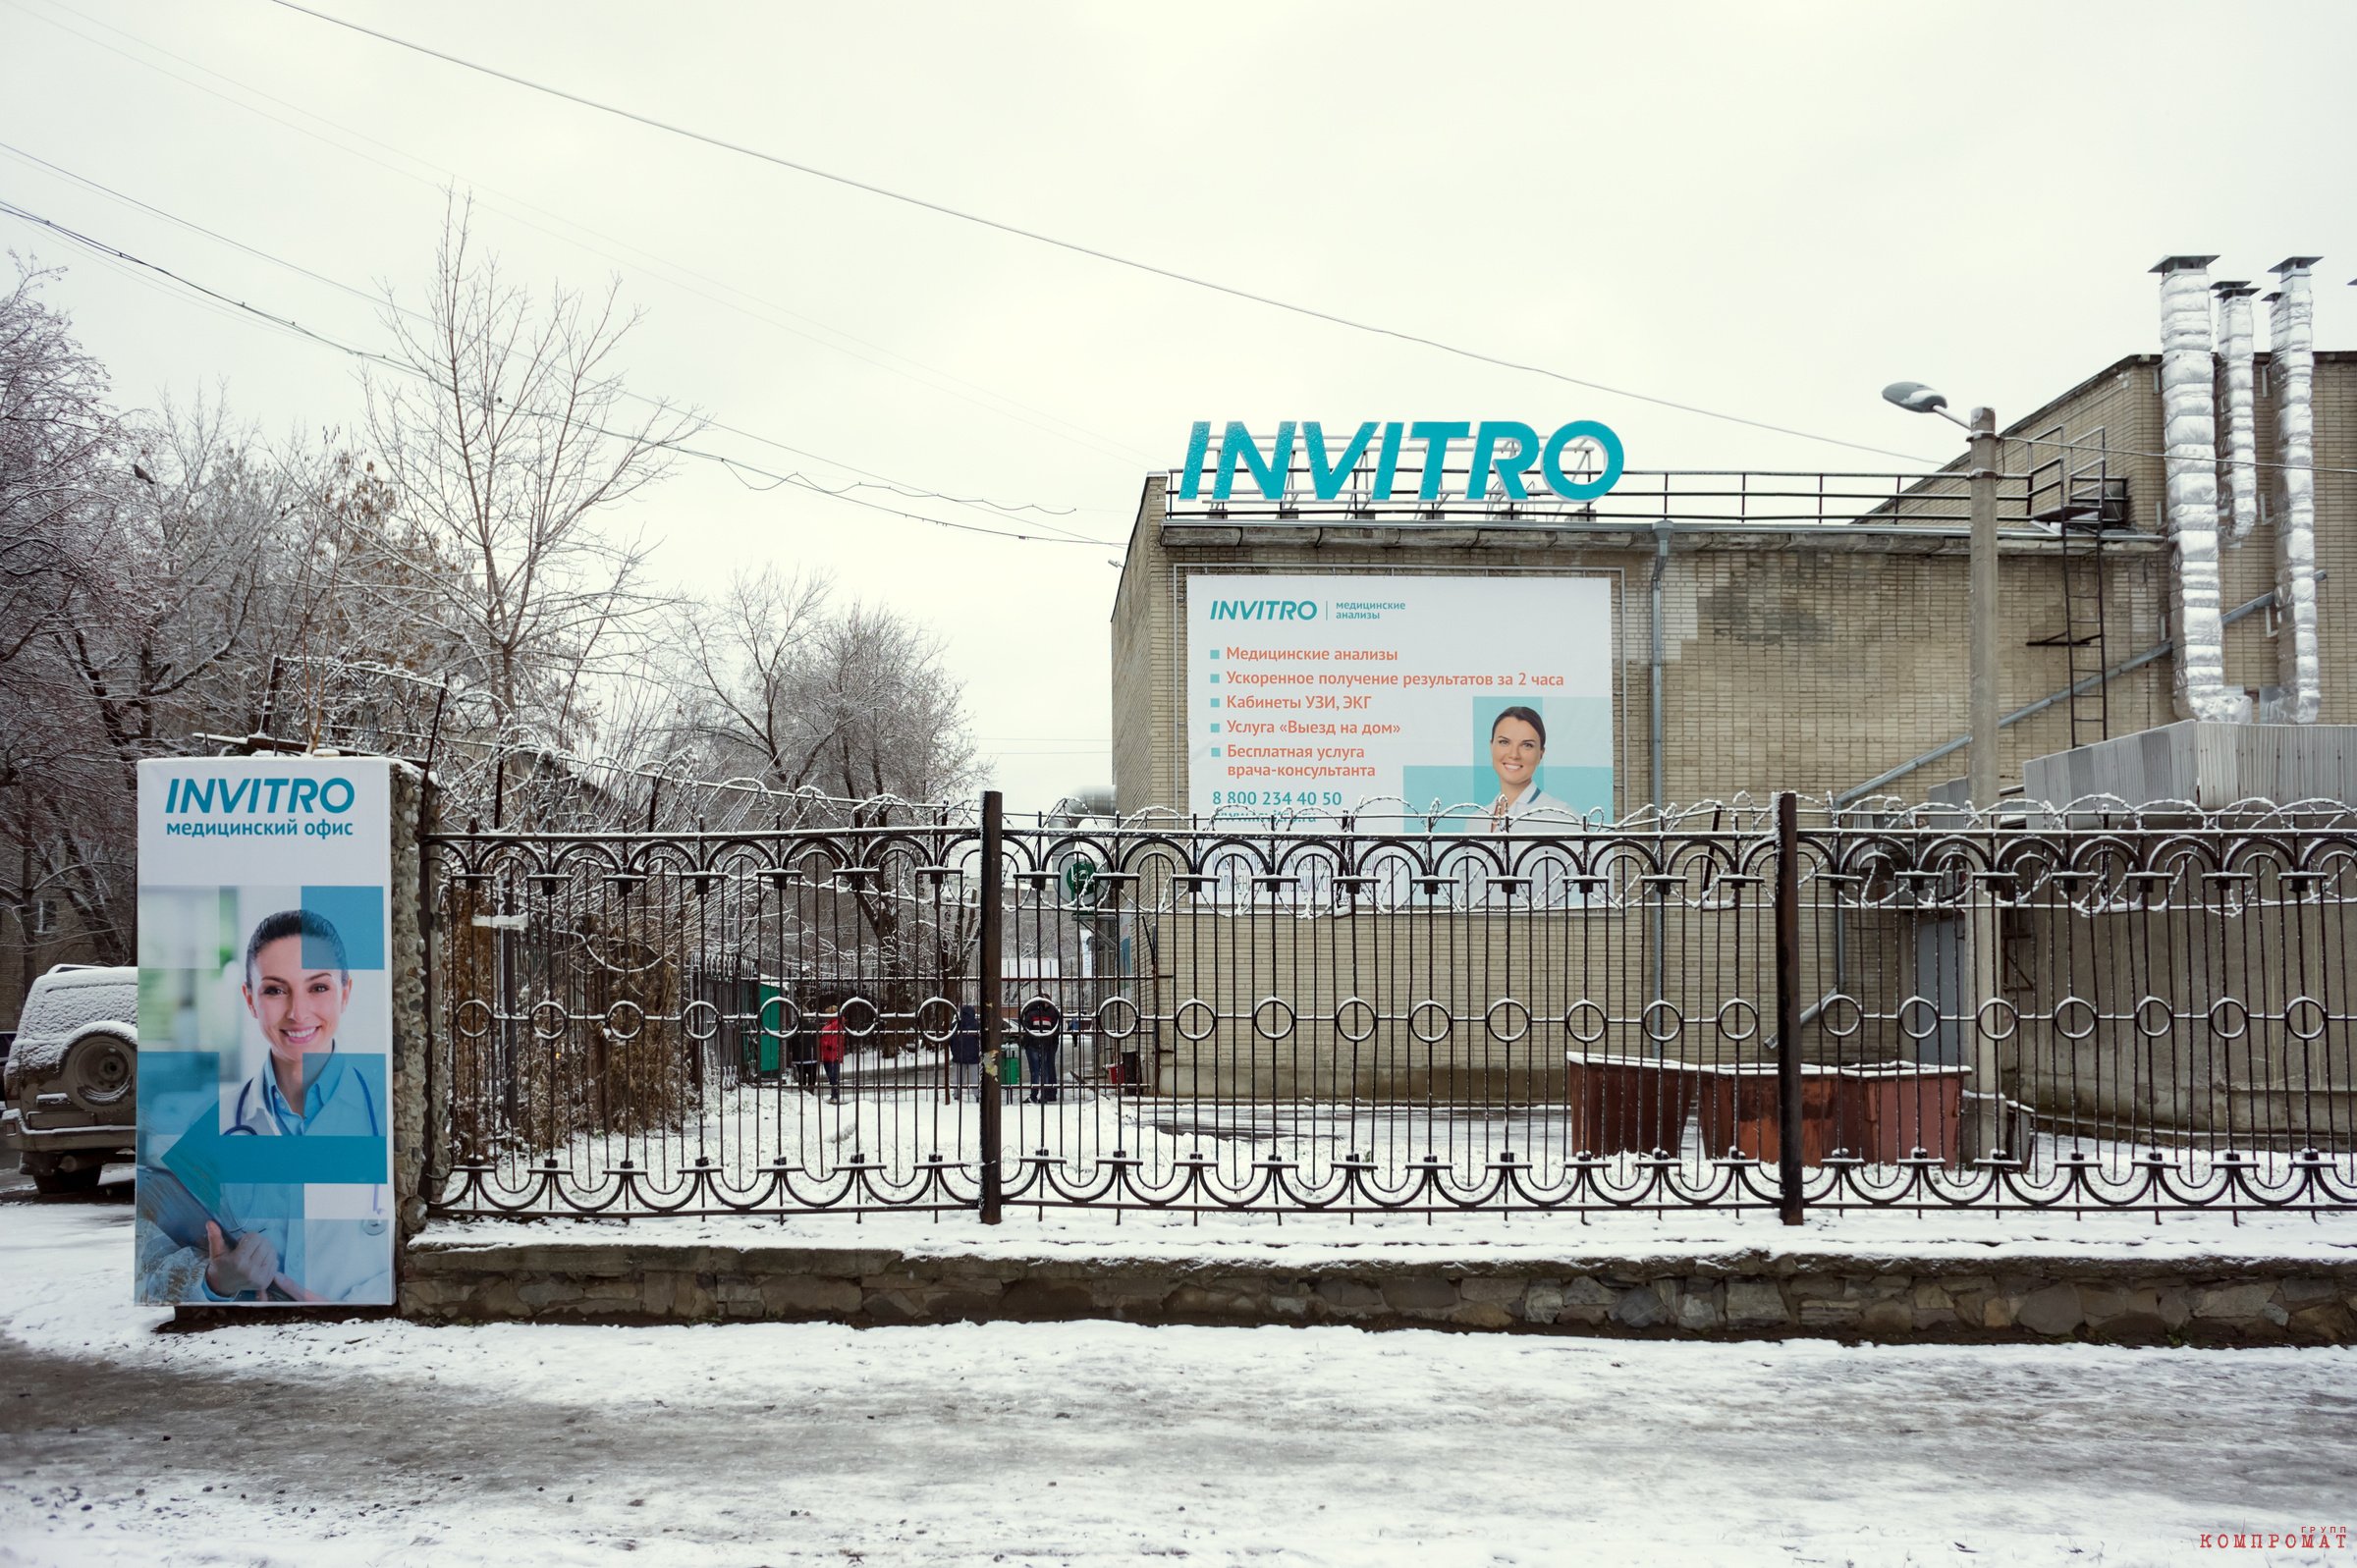 Лаборатории "Инвитро" встречаются на каждом шагу в Москве